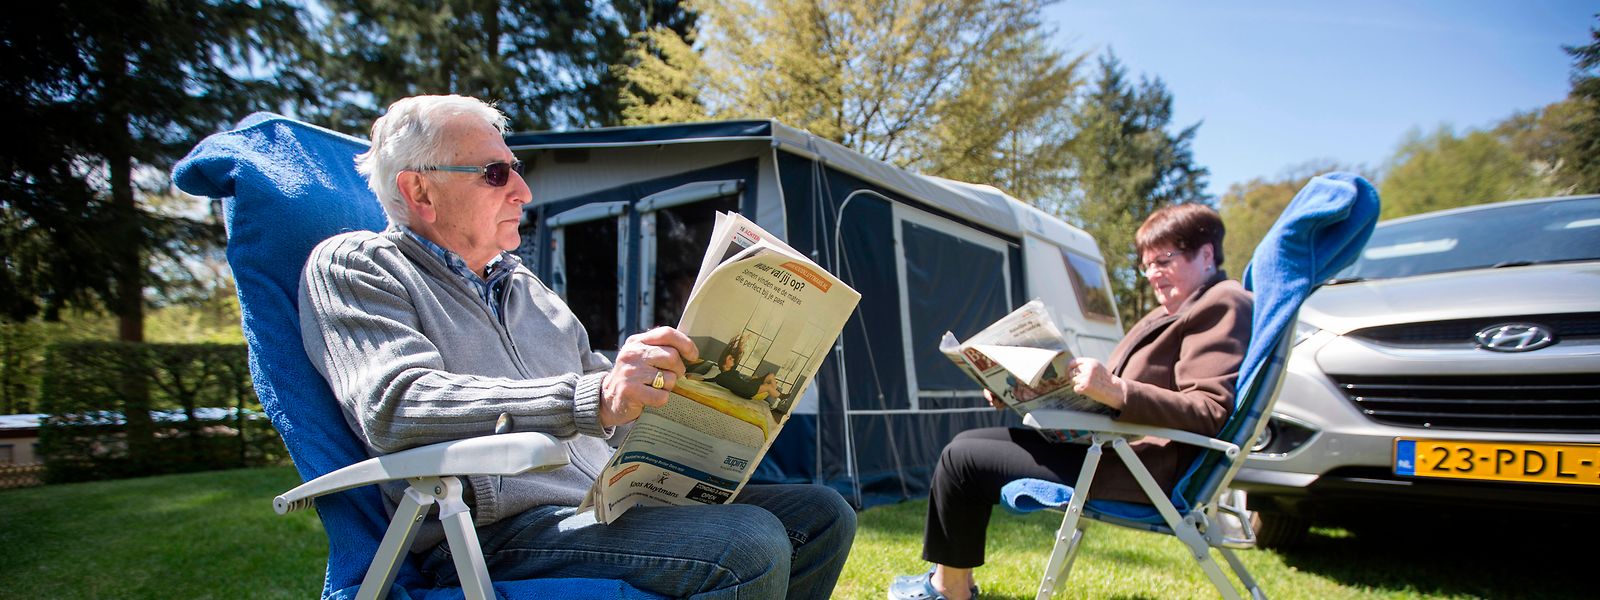 Übernachtungsgäste wie diese niederländischen Touristen auf dem Campingplatz La Pinède in Consdorf sollen künftig einen kleinen finanziellen Beitrag leisten.